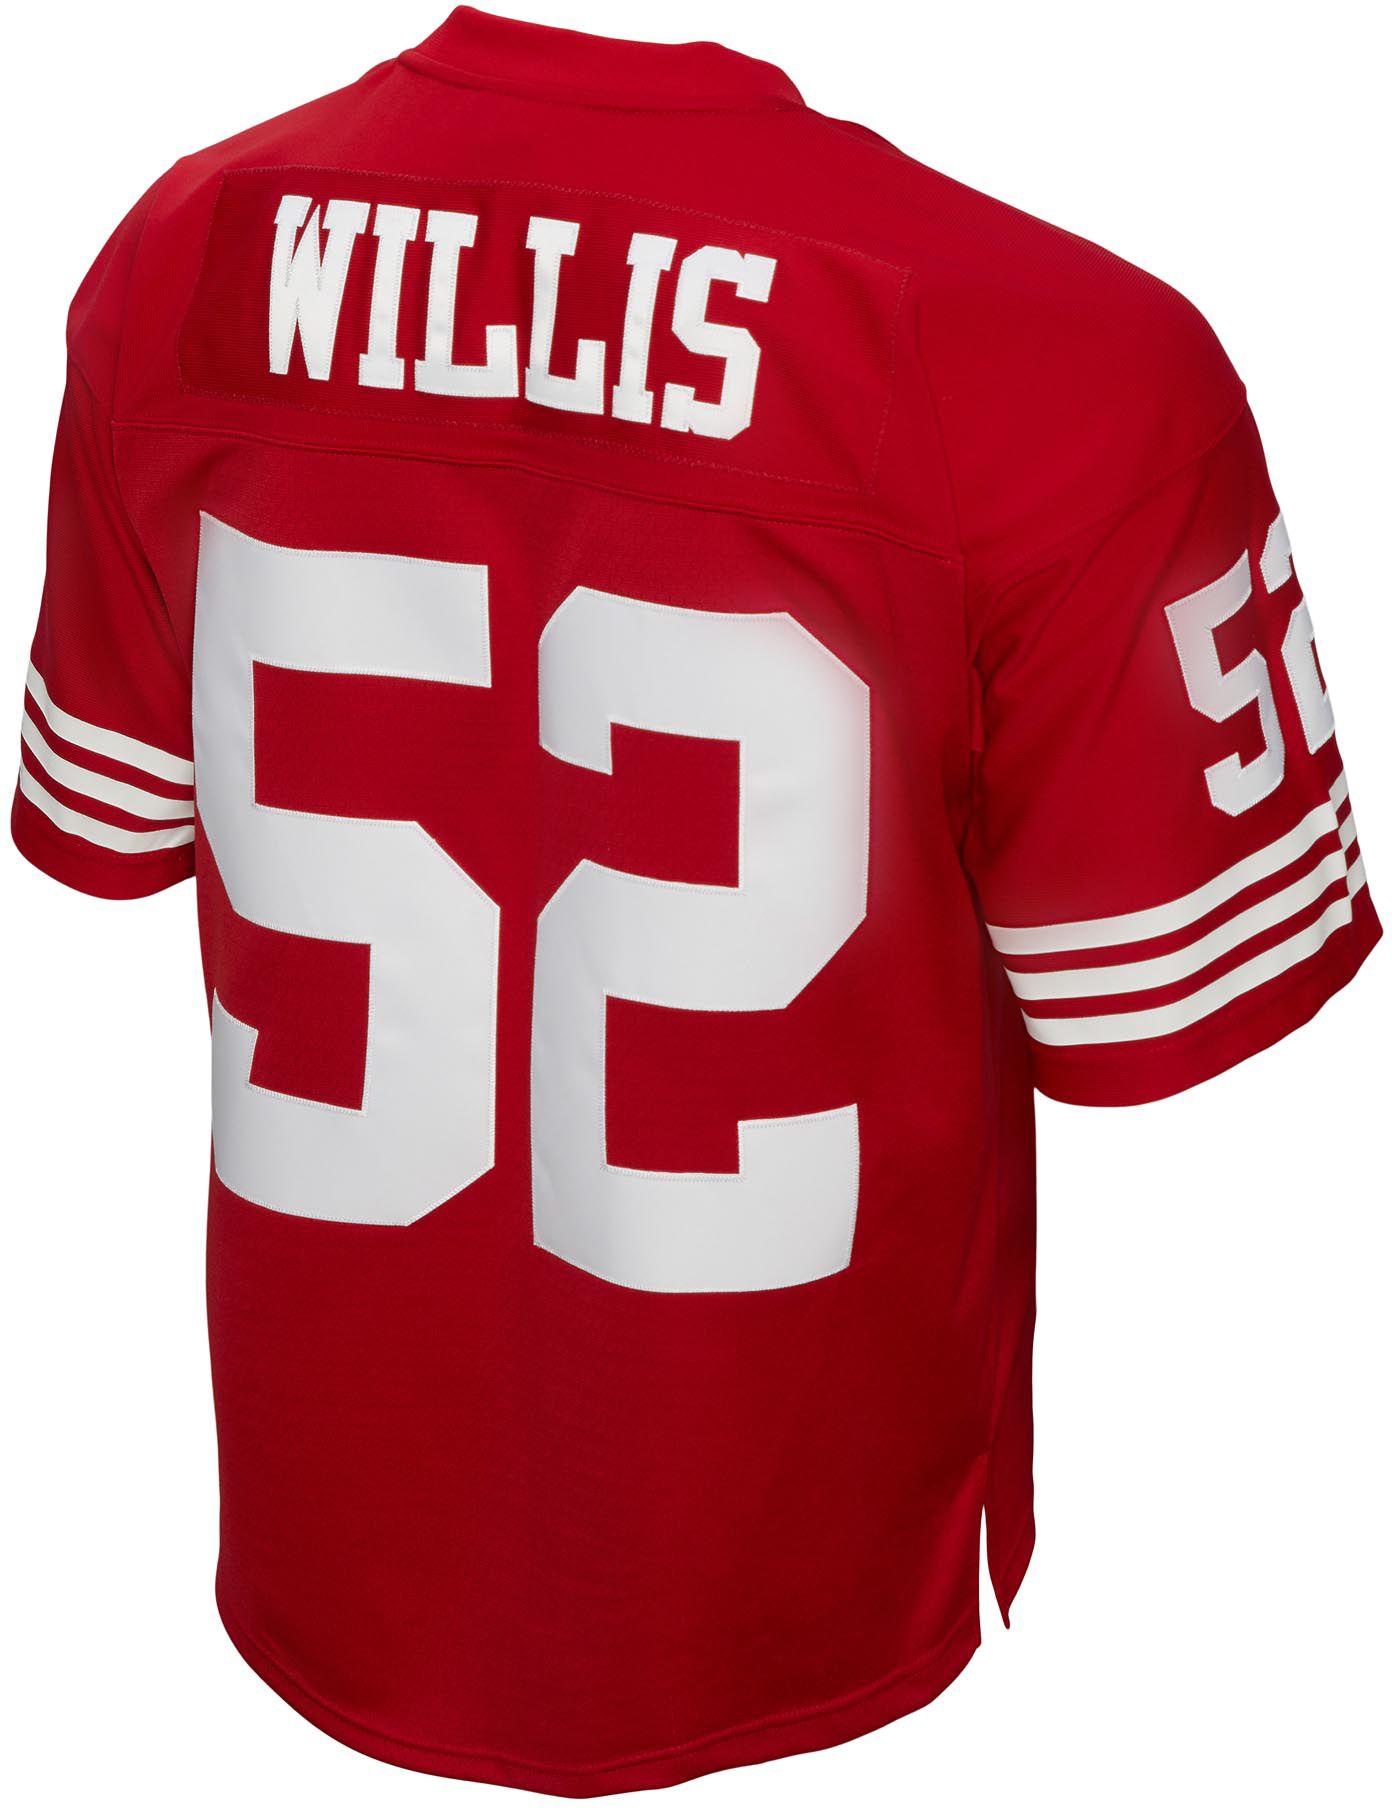 Patrick Willis throwback jersey